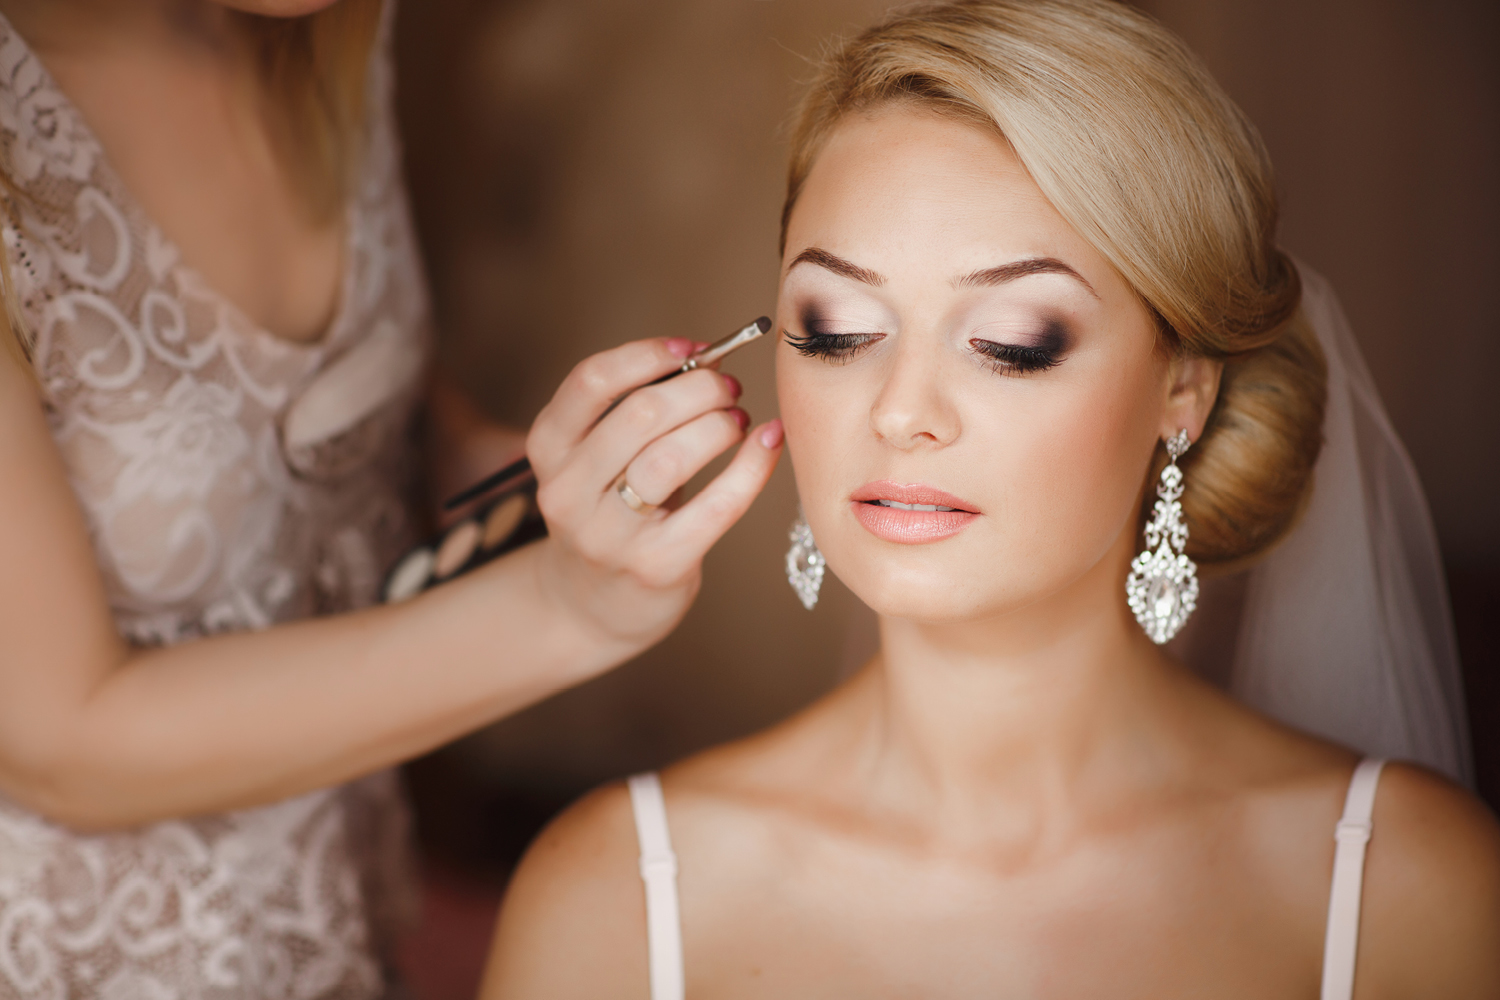 Красота по-свадебному, или тенденции свадебного макияжа